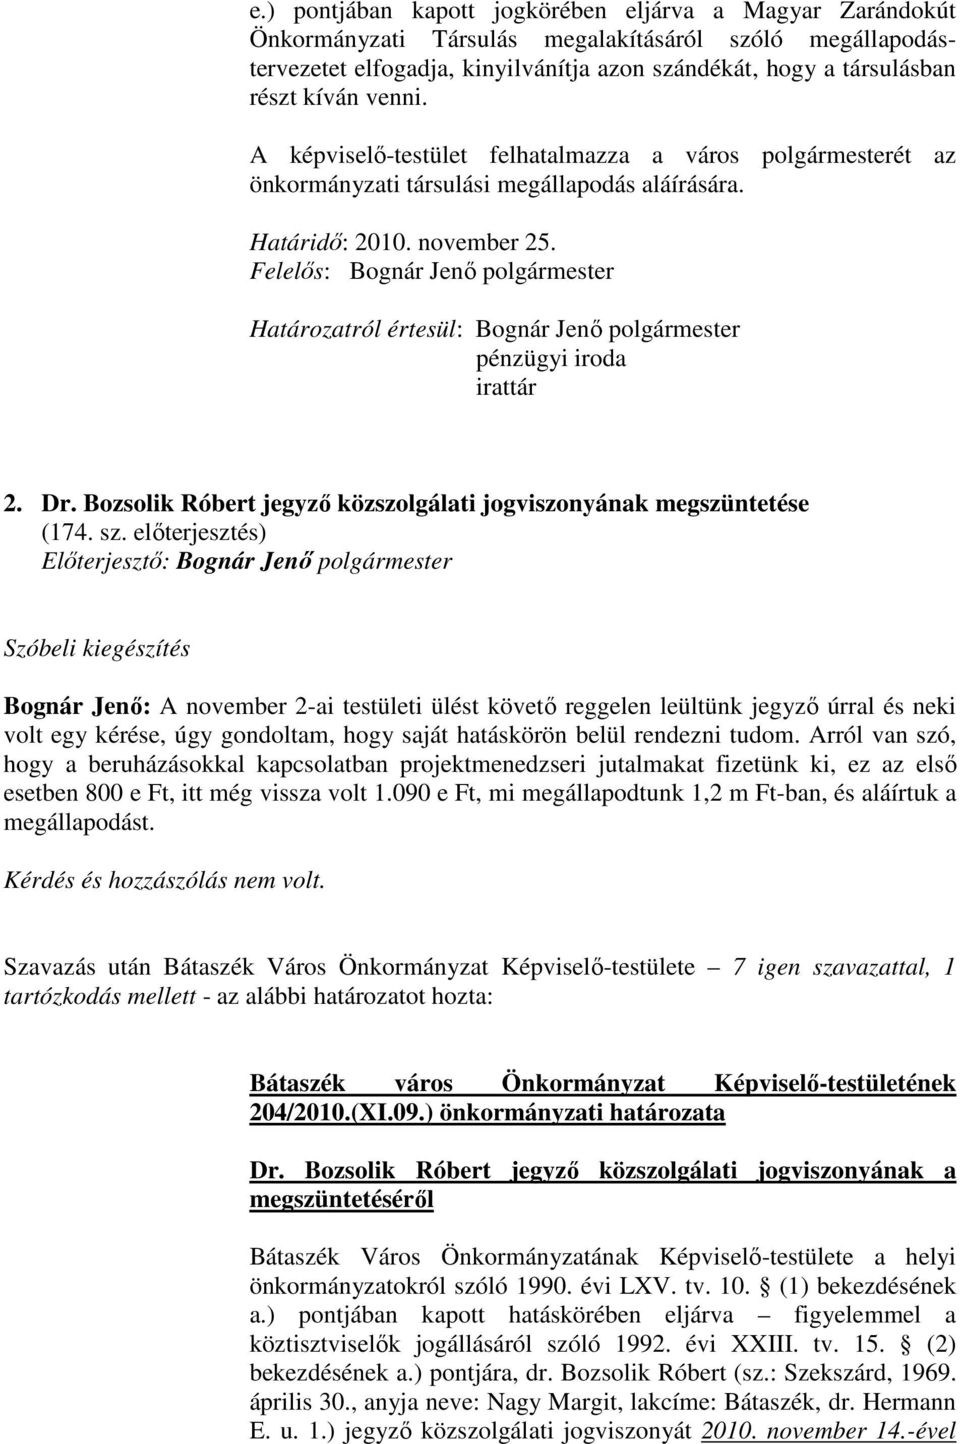 Felelıs: Bognár Jenı polgármester Határozatról értesül: Bognár Jenı polgármester pénzügyi iroda irattár 2. Dr. Bozsolik Róbert jegyzı közszolgálati jogviszonyának megszüntetése (174. sz.